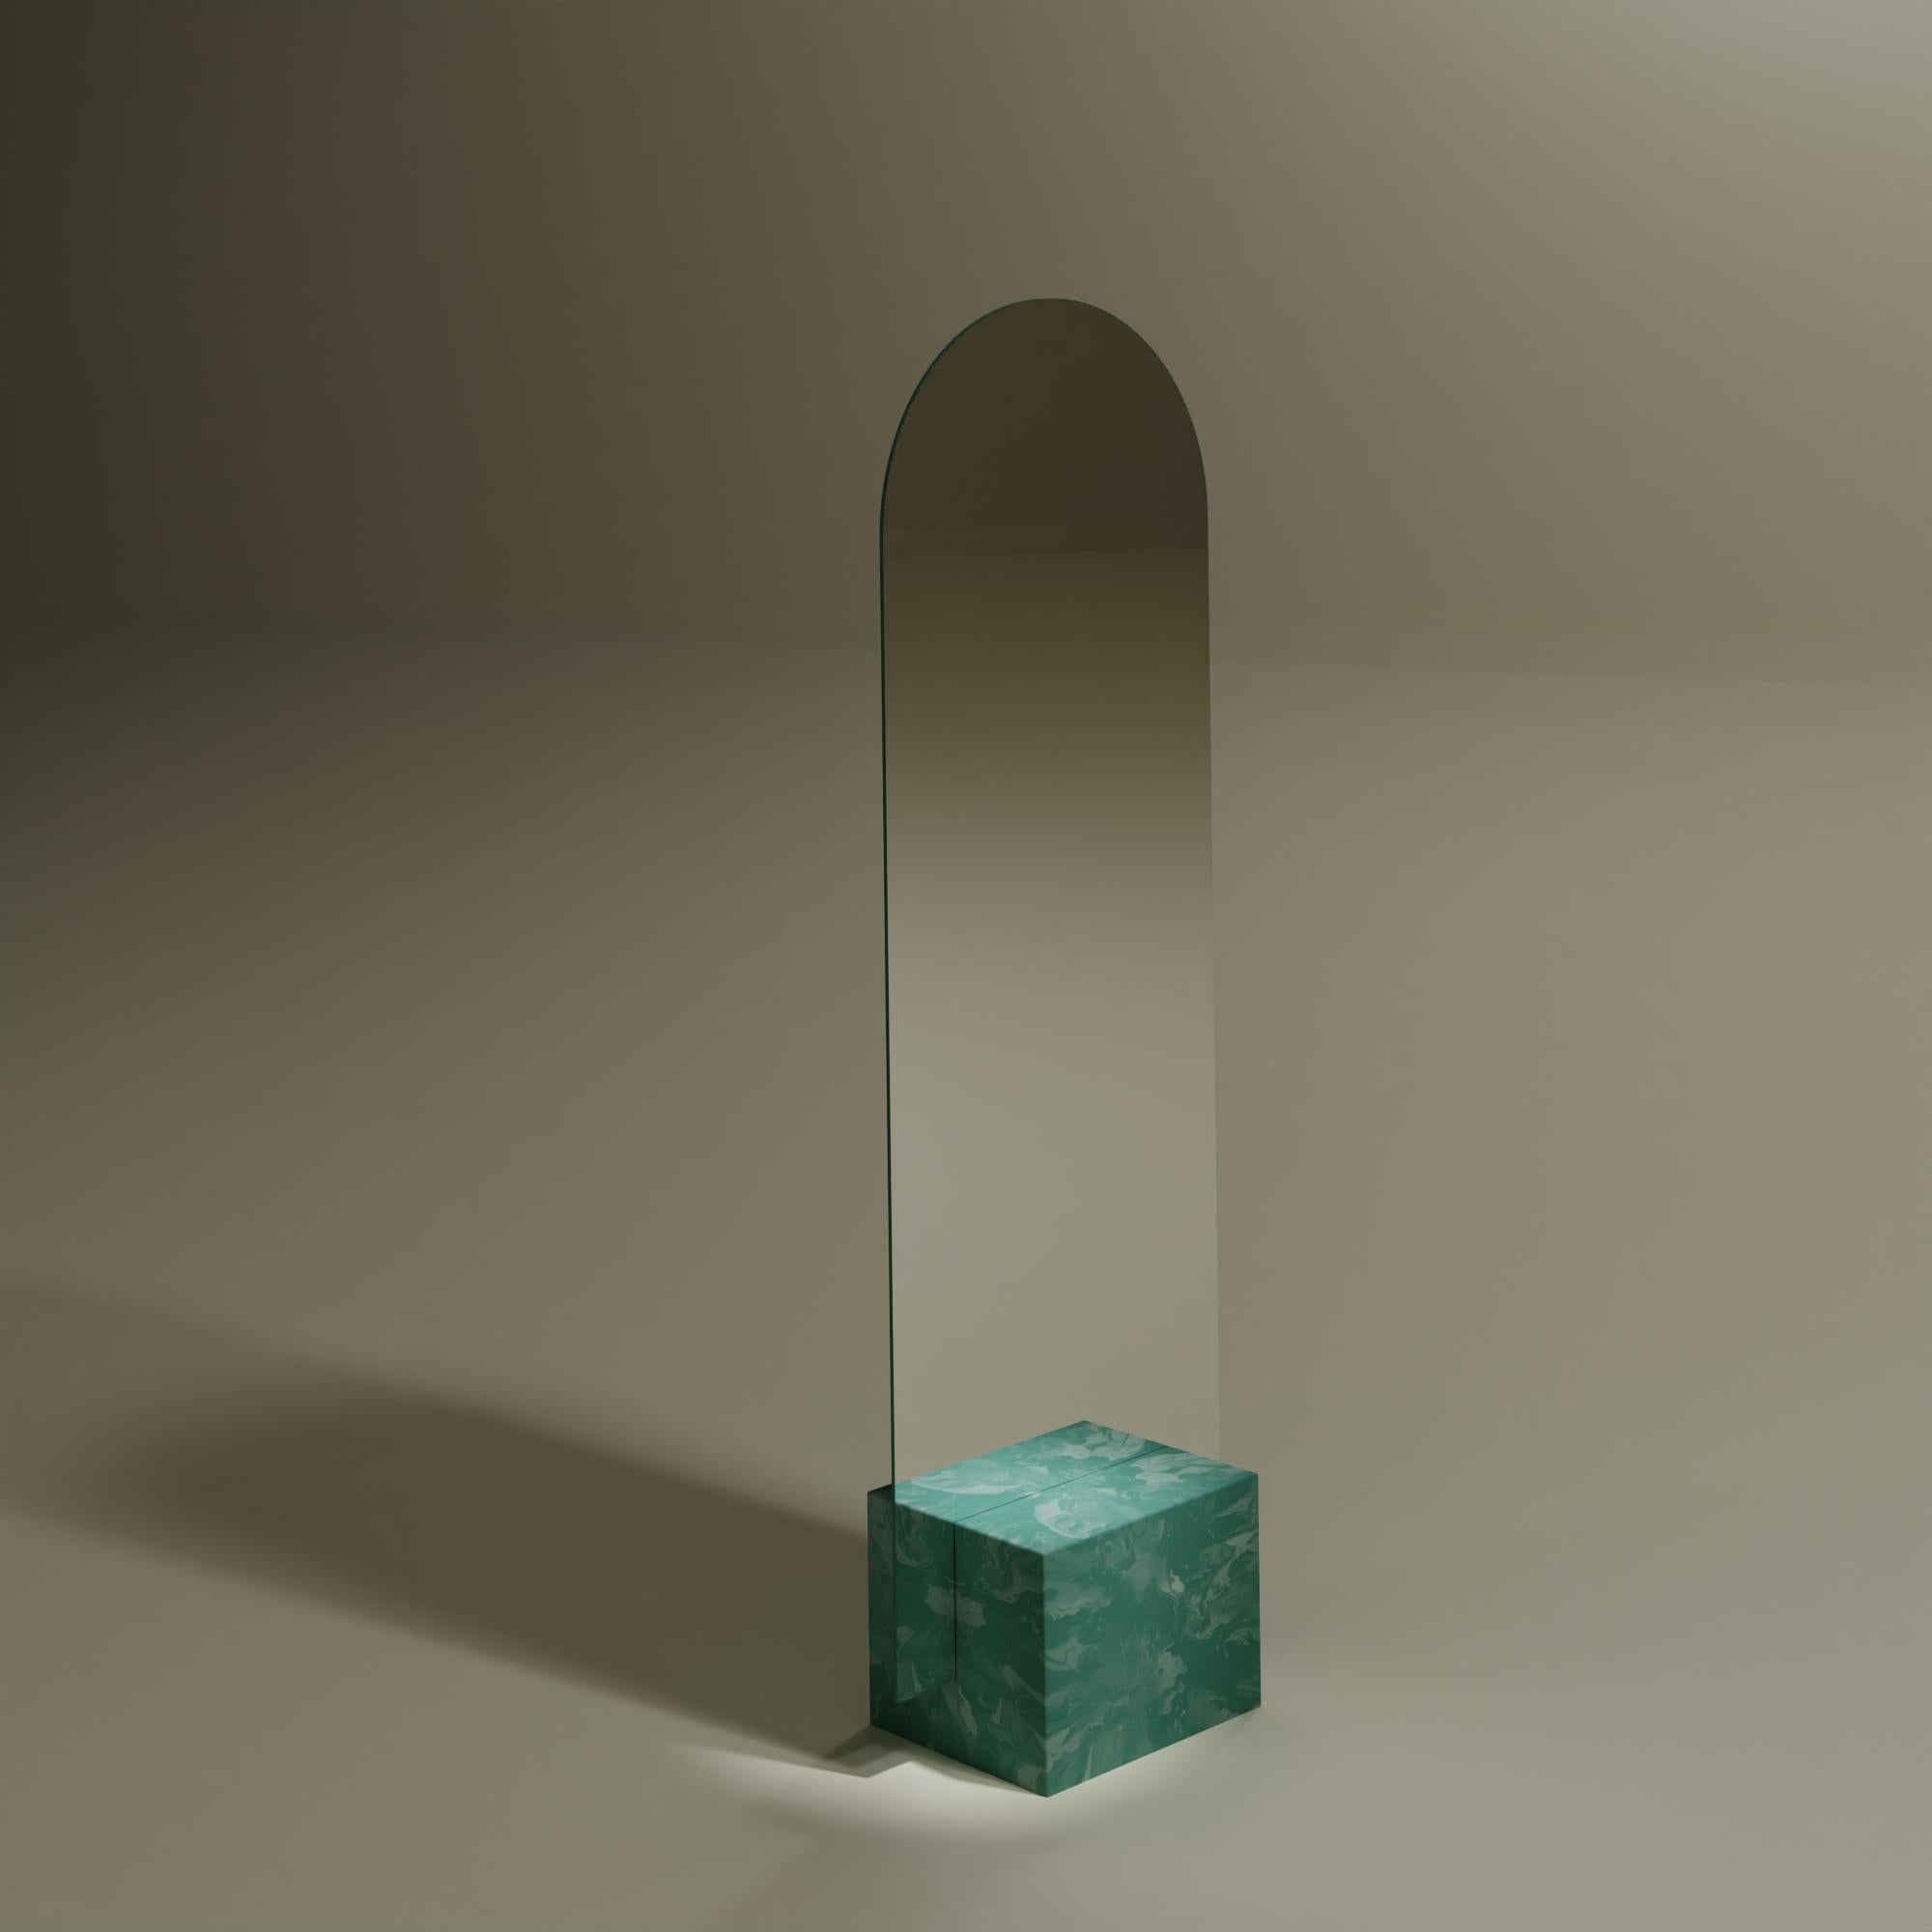 Zeitgenössischer grüner Standspiegel Handgefertigt aus 100% recyceltem Kunststoff von Anqa Studios
Mit seinem steinartigen Boden und der zerbrechlich wirkenden Silhouette des Oberteils ist der ANQA Moonrise Spiegel eine moderne Verbindung von Kunst